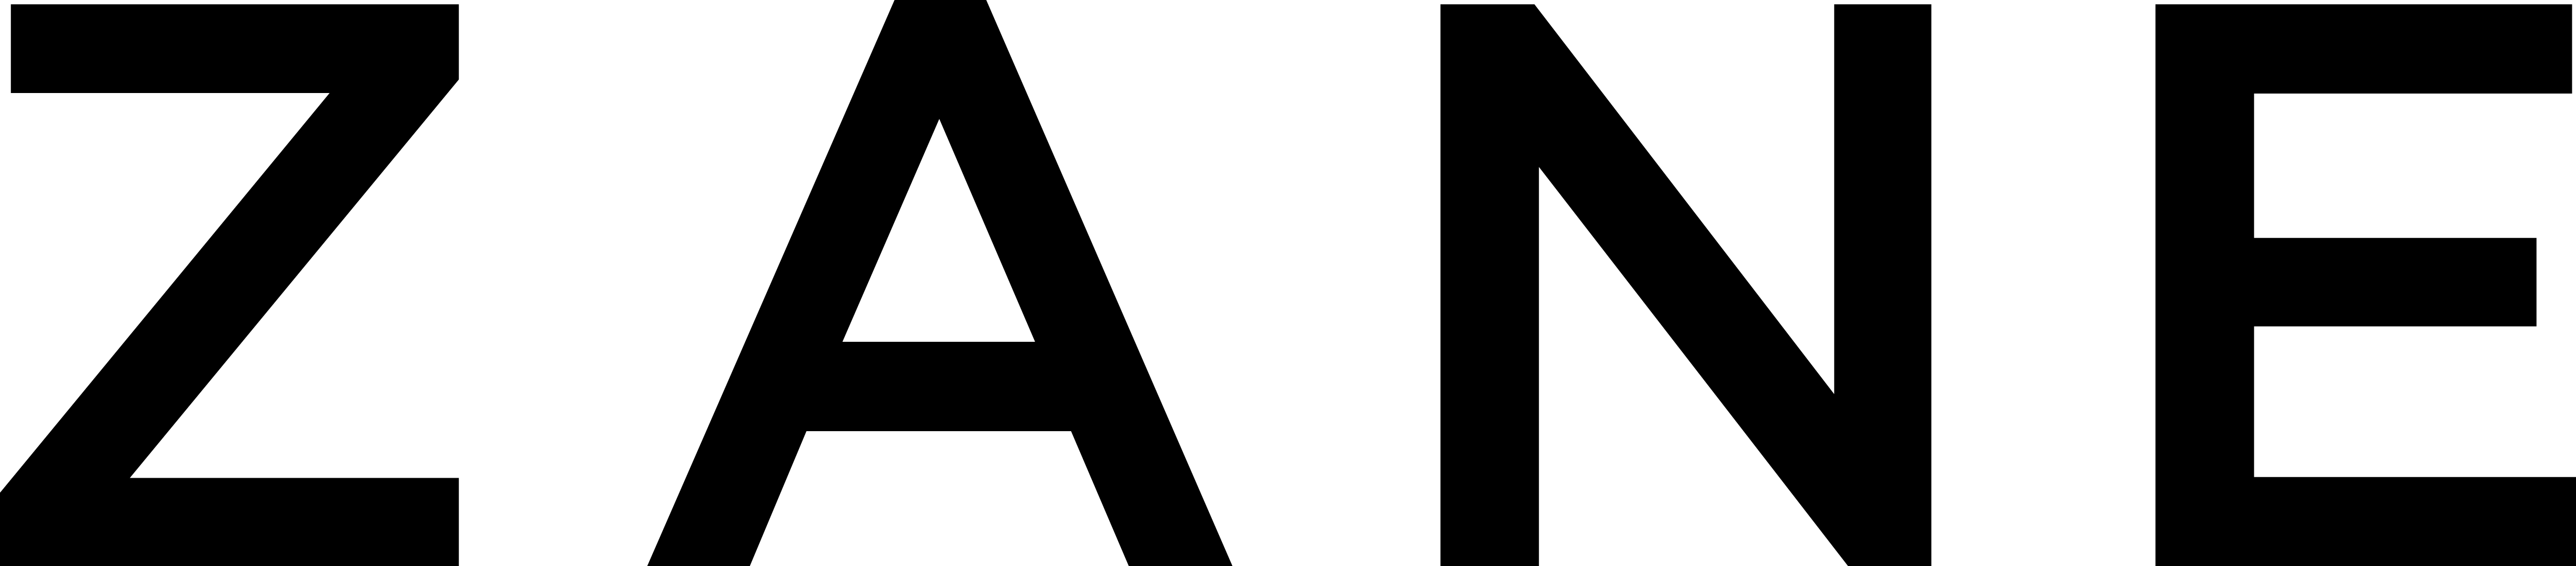 Zane Logo - News